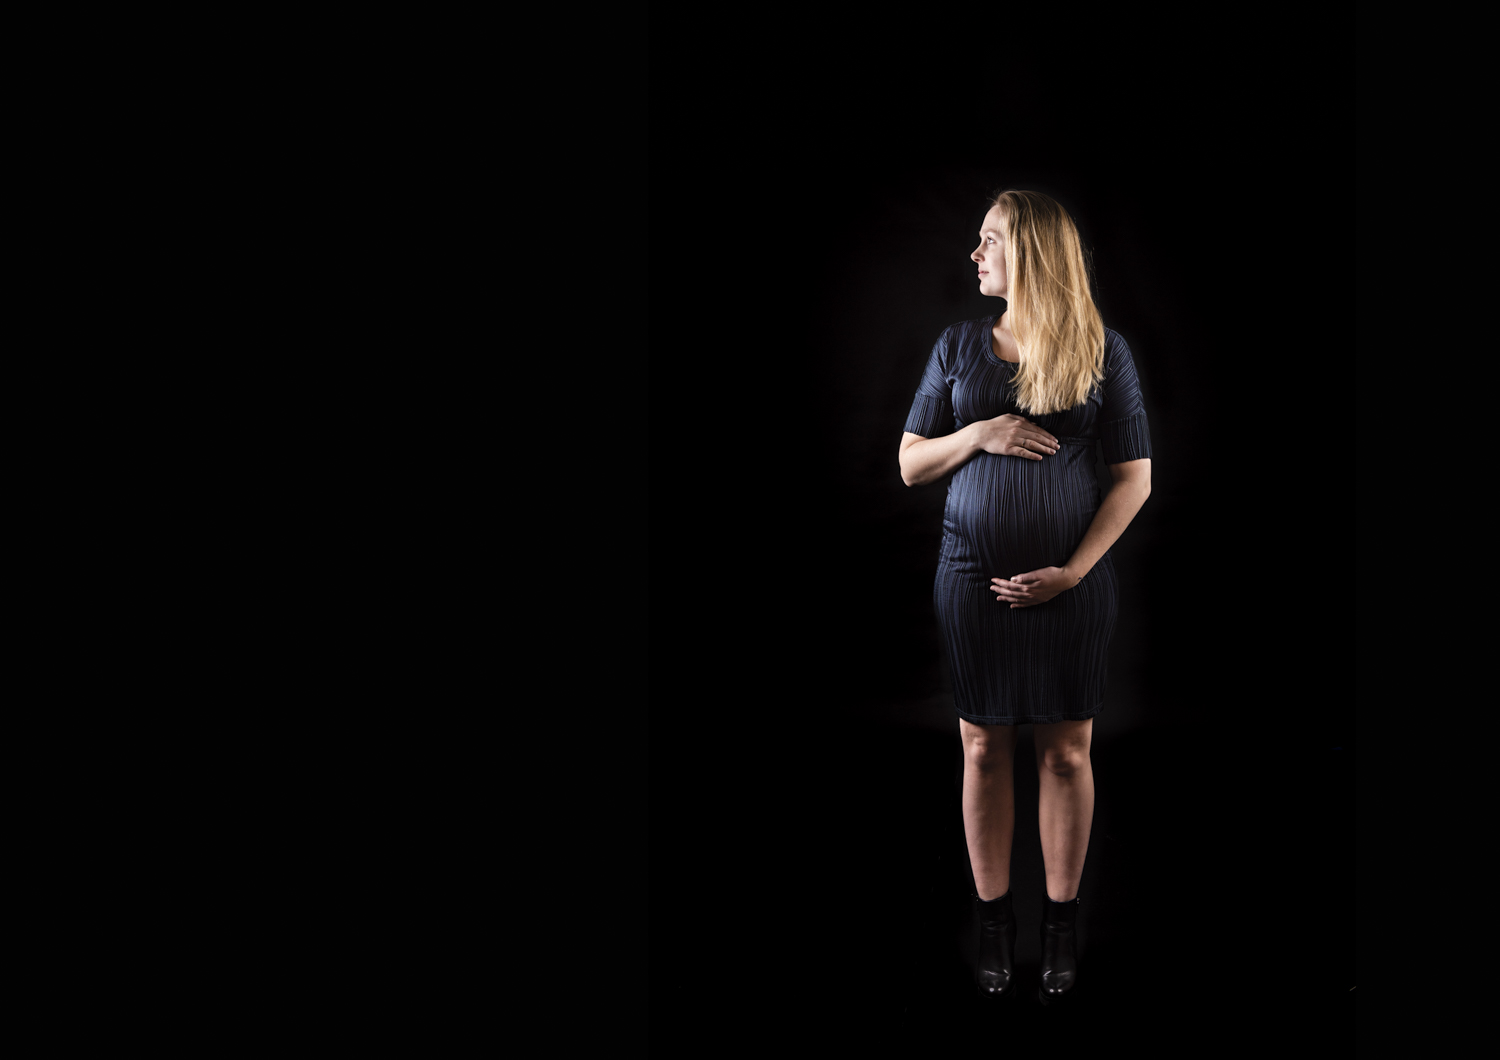 Zwangerschapsfotoshoot Zwangerschapsfotograaf Noord-Holland Heemstede Haarlem Pregnancy photo shoot Bollebuik zwangerschapsfotografie familiefotograaf zwangerschaapsshoot